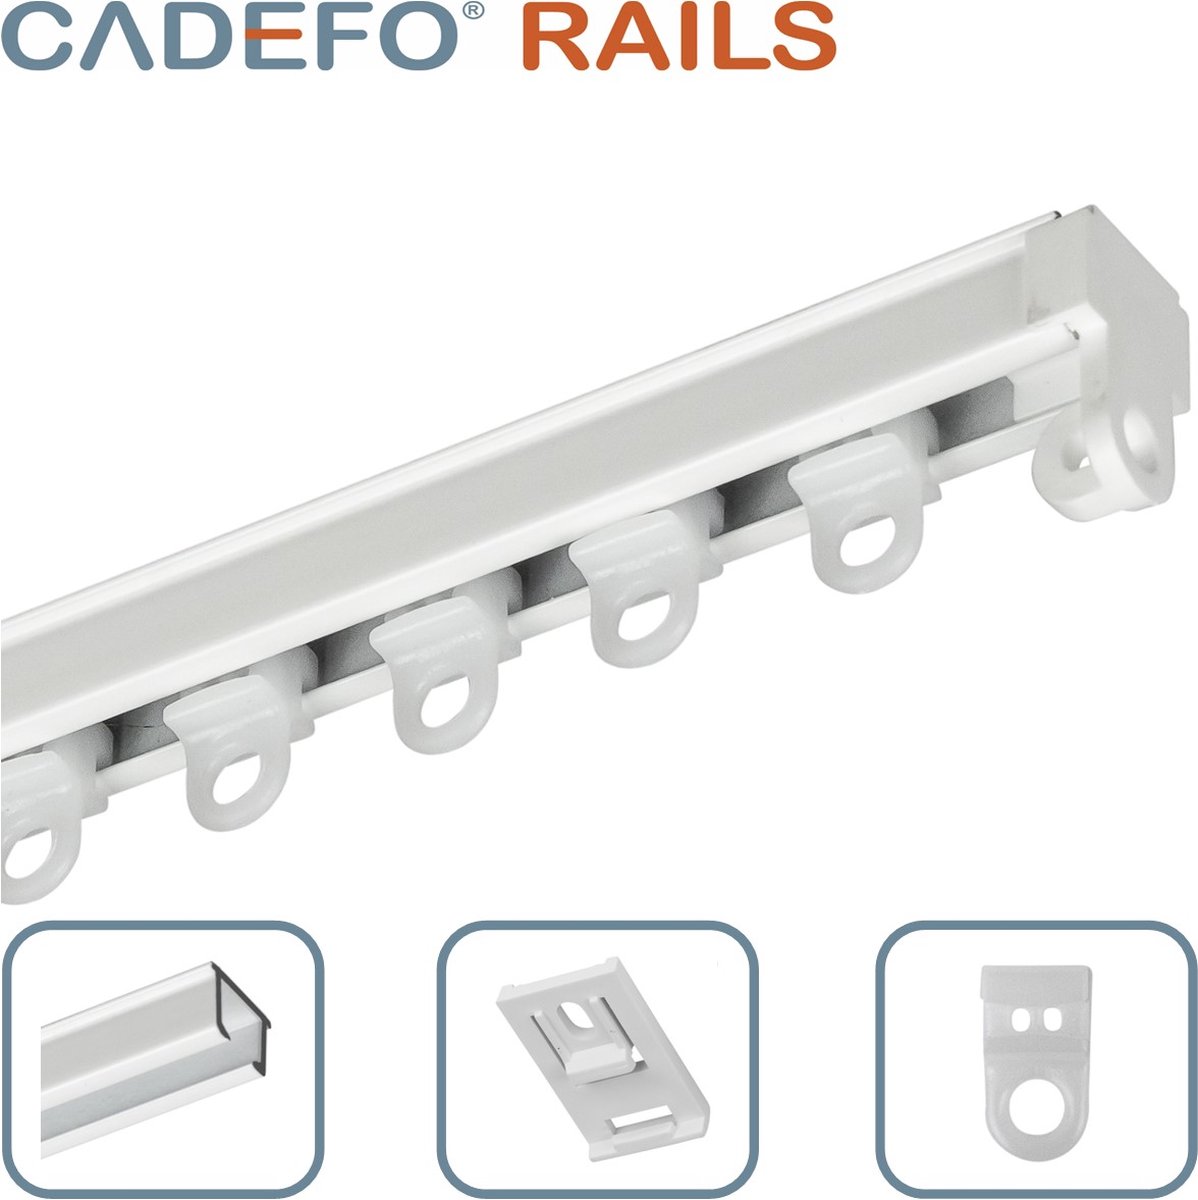 CADEFO RAILS (501 - 550 cm) Gordijnrails - Compleet op maat! - UIT 1 STUK - Leverbaar tot 6 meter - Plafondbevestiging - Lengte 538 cm